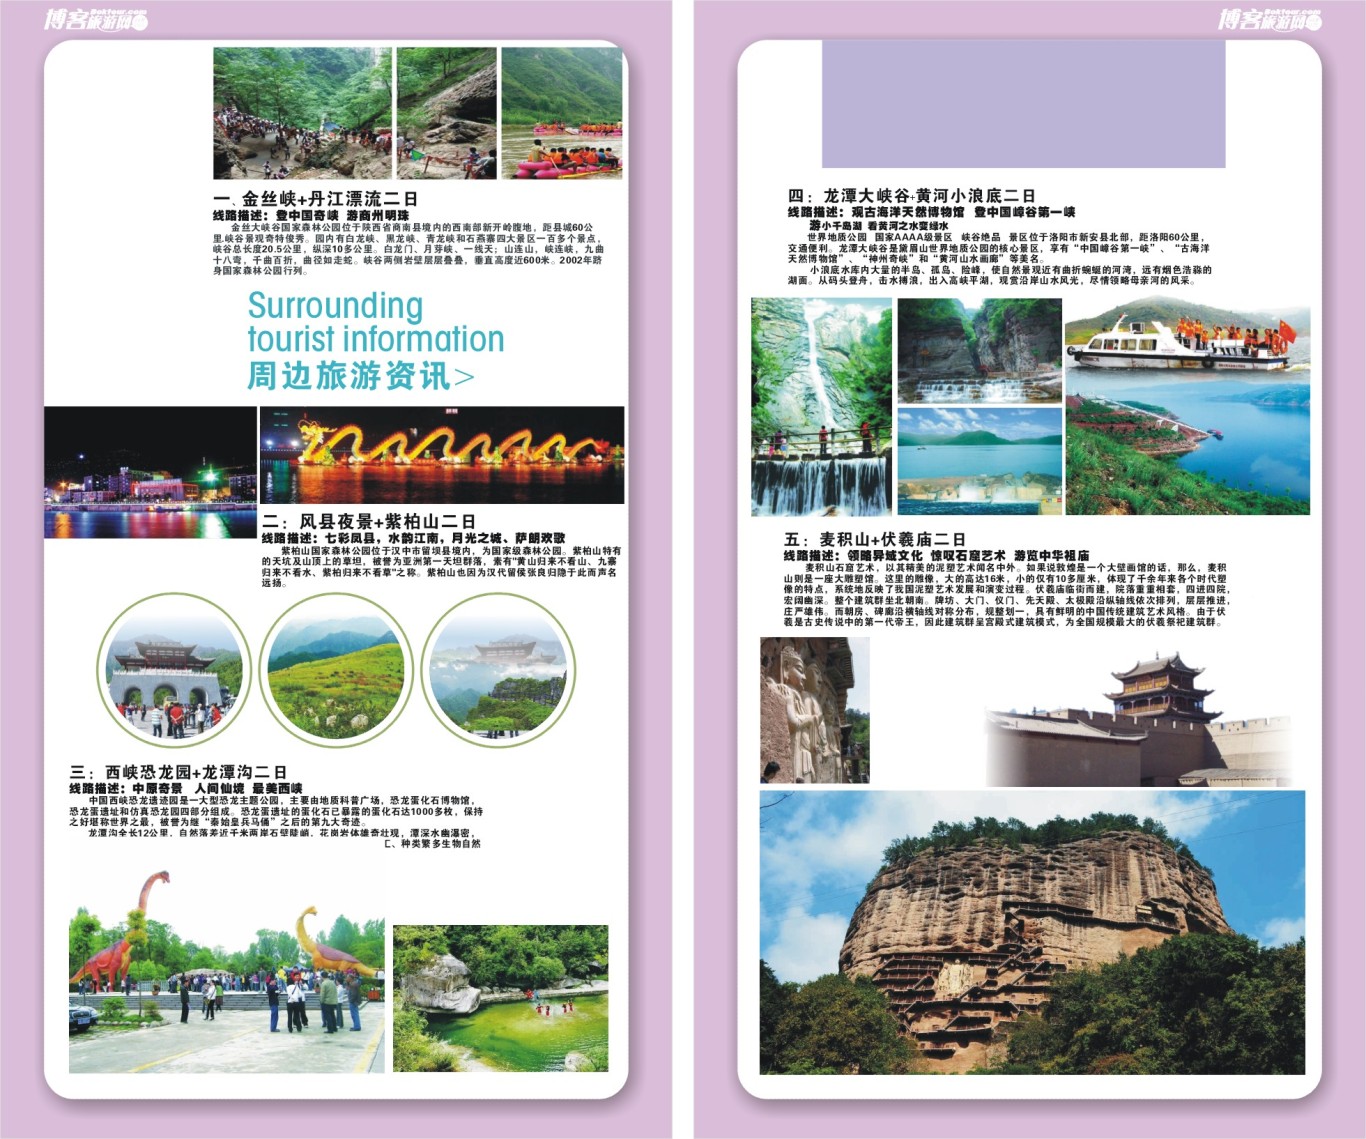 博客旅游网宣传手册设计图17